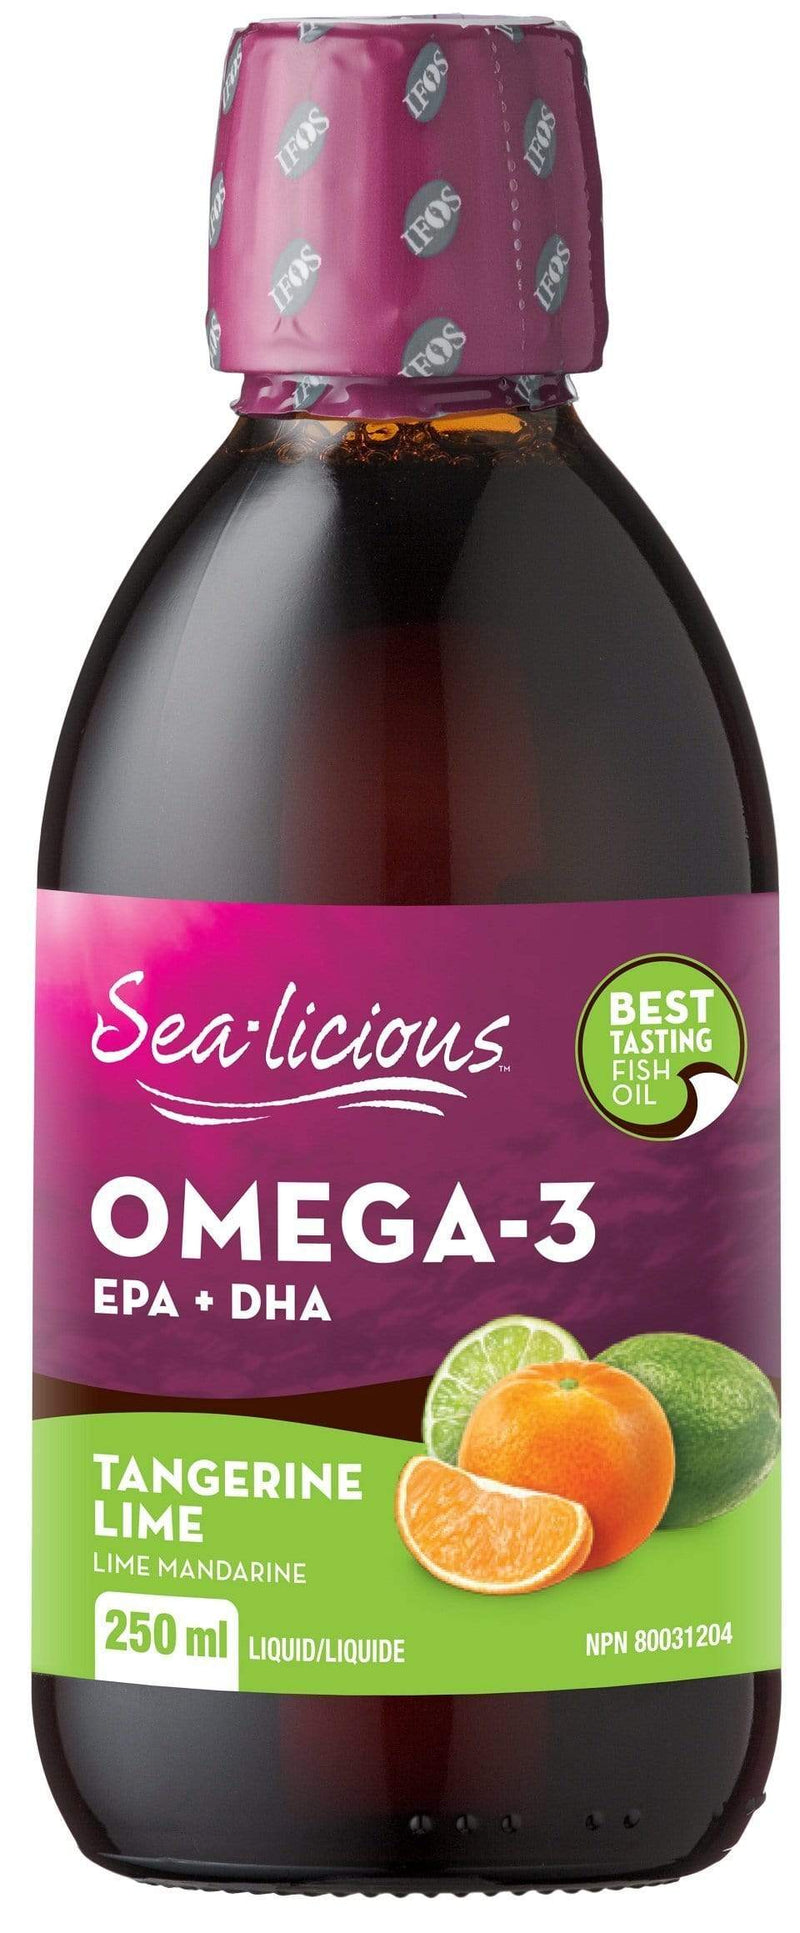 أوميغا 3 المنعشة بالبحر من كارلين مع EPA + DHA - ليمون اليوسفي